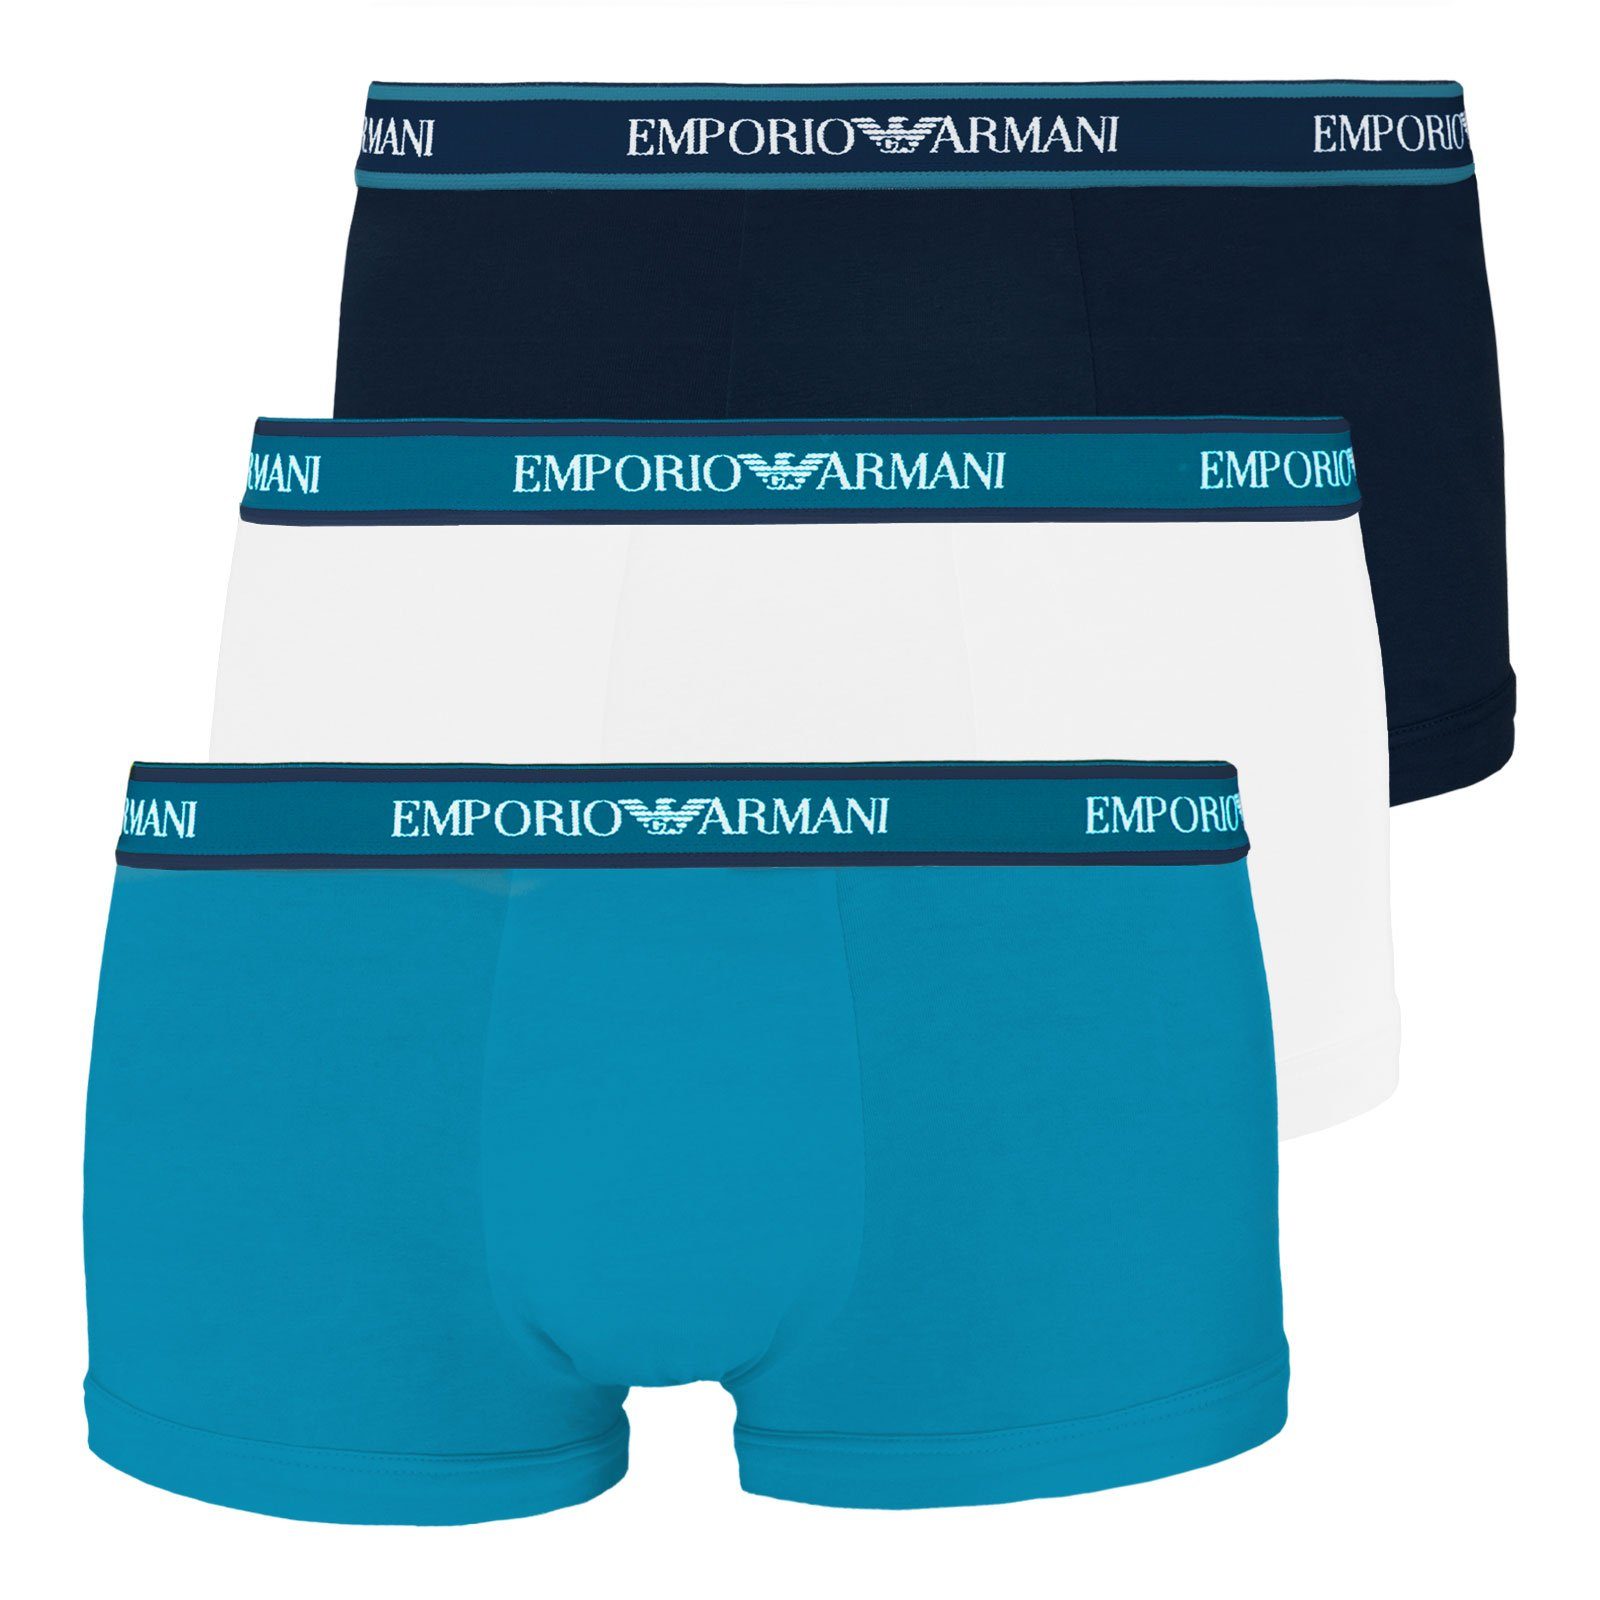 Wäsche/Bademode Boxershorts Emporio Armani Trunk Boxershorts Stretch Cotton (3 Stück) mit doppelt verarbeitetem Frontbereich